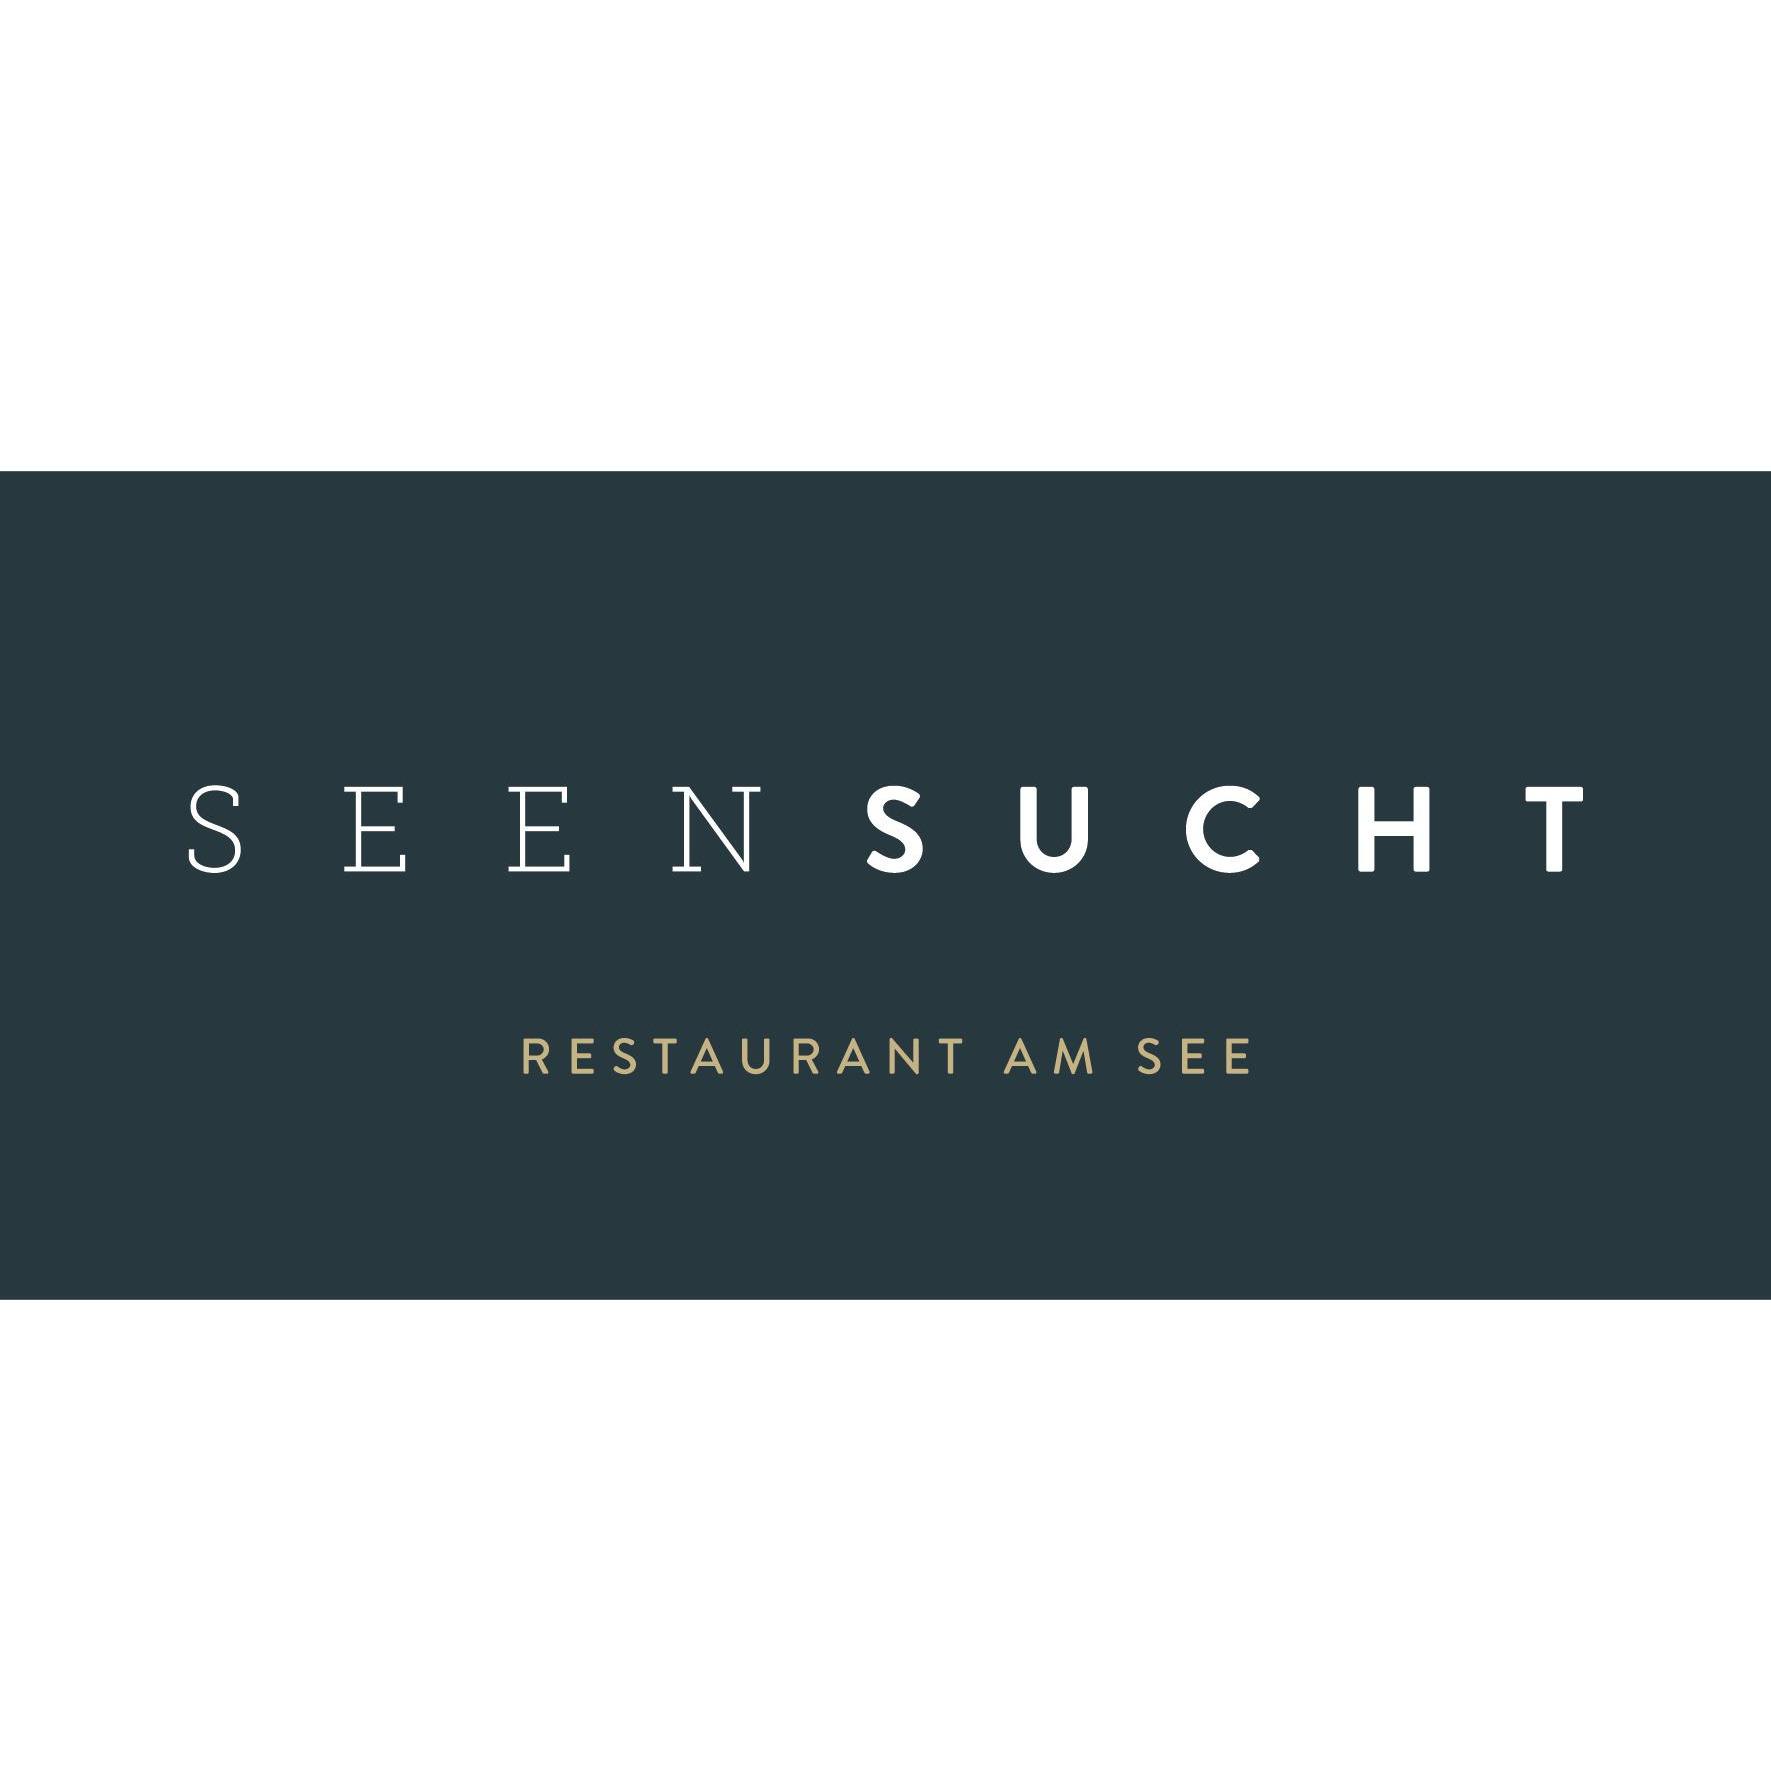 SEENSUCHT - Restaurant am See